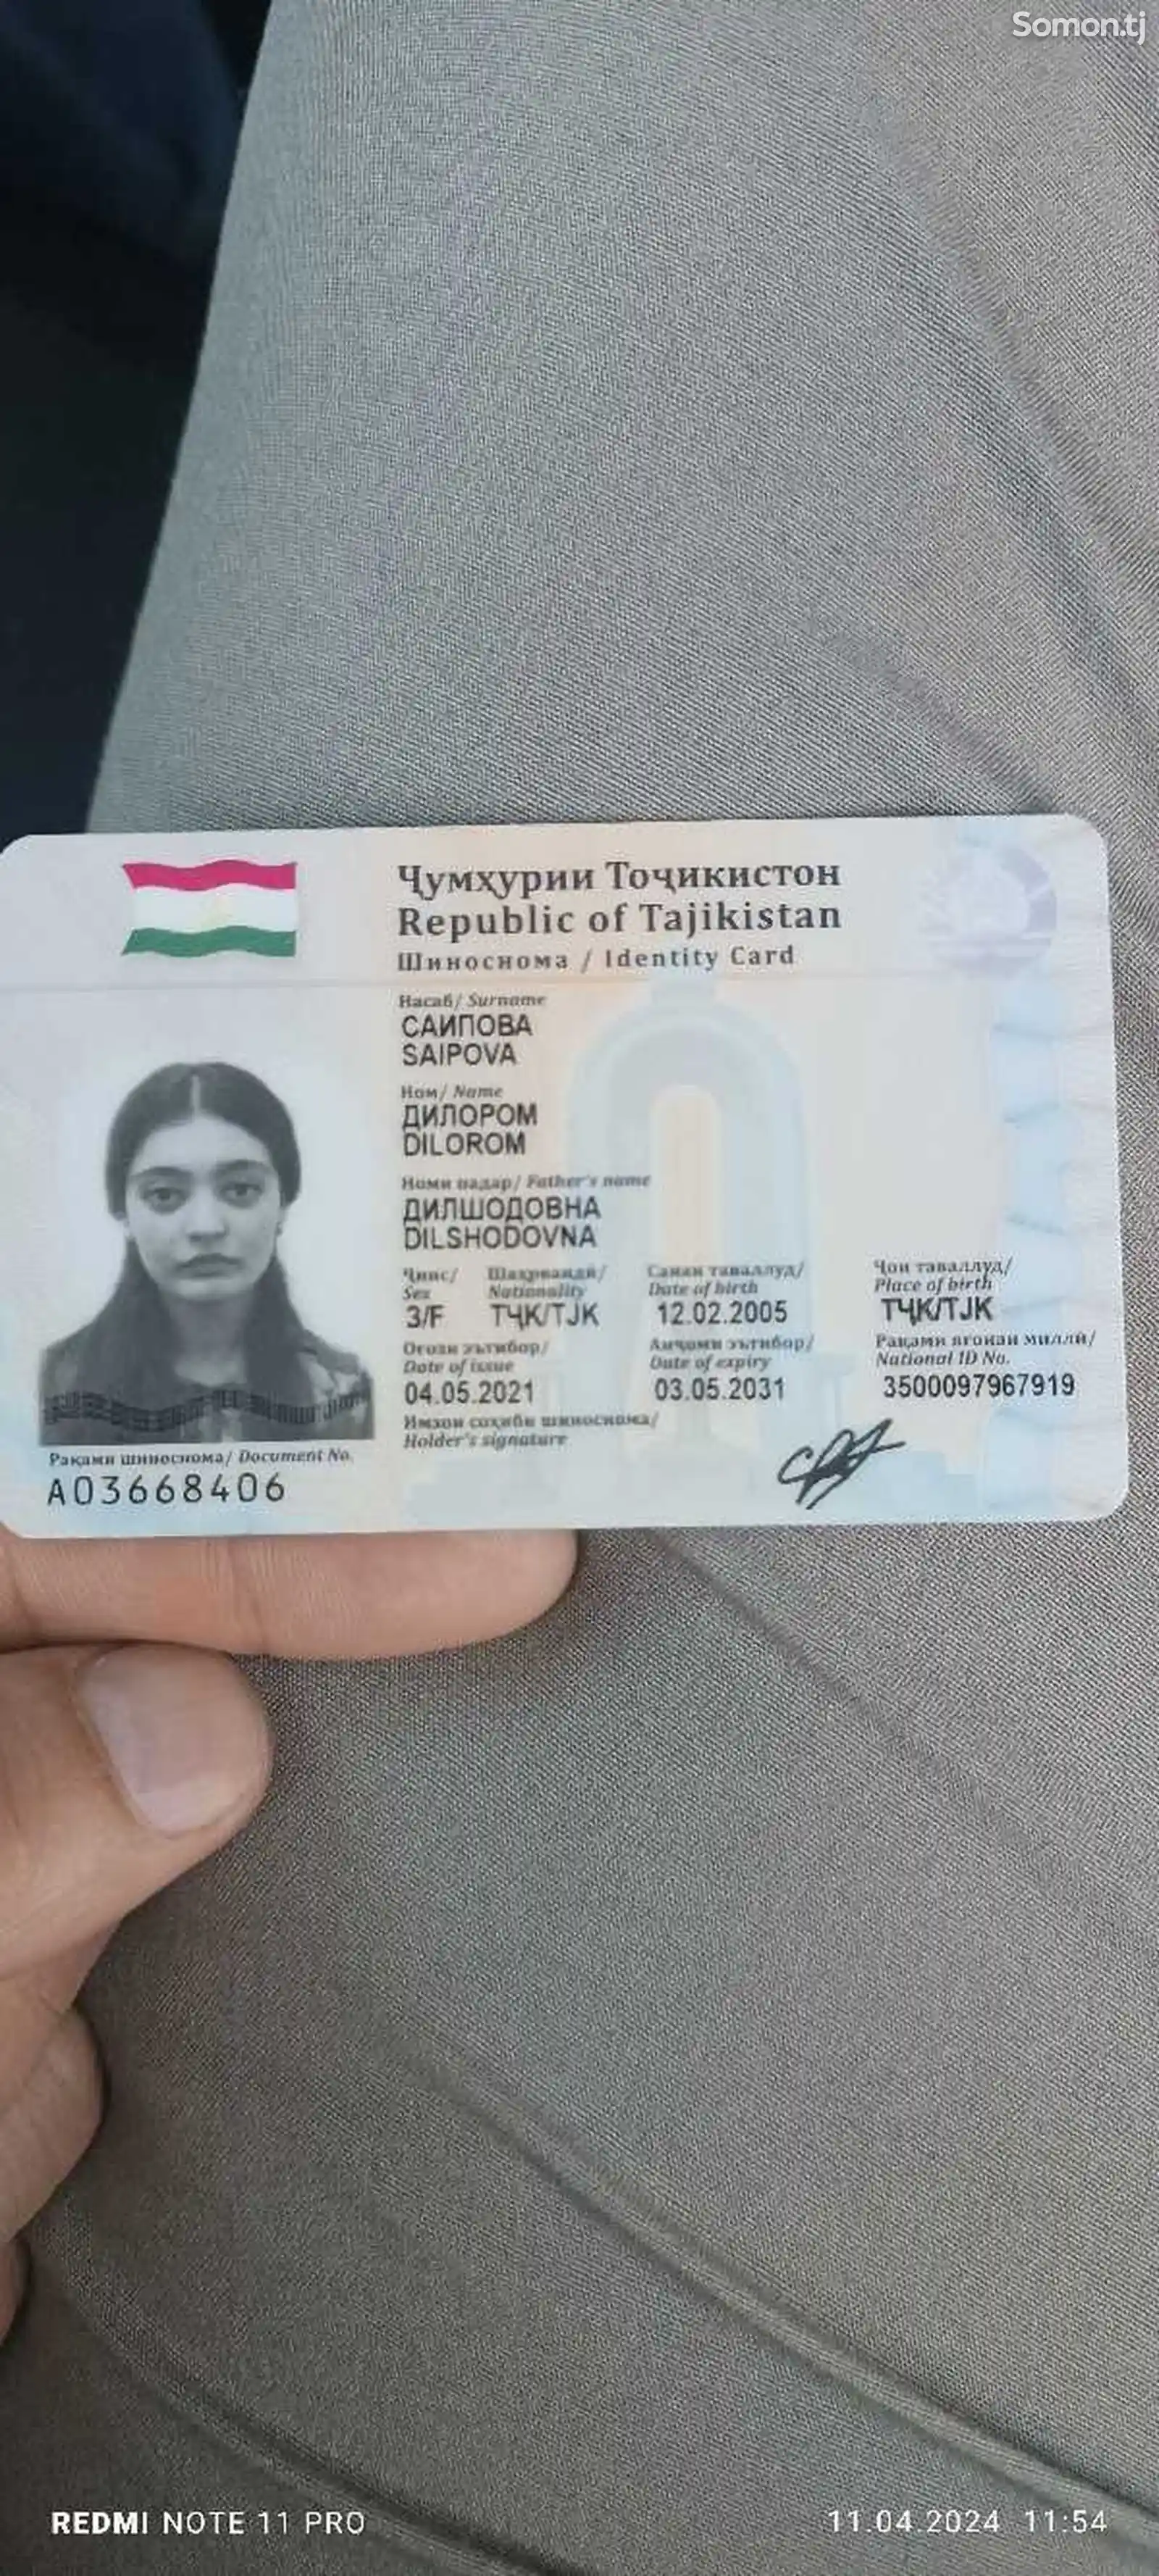 Утерян паспорт на имя Саиповой Дилором-1